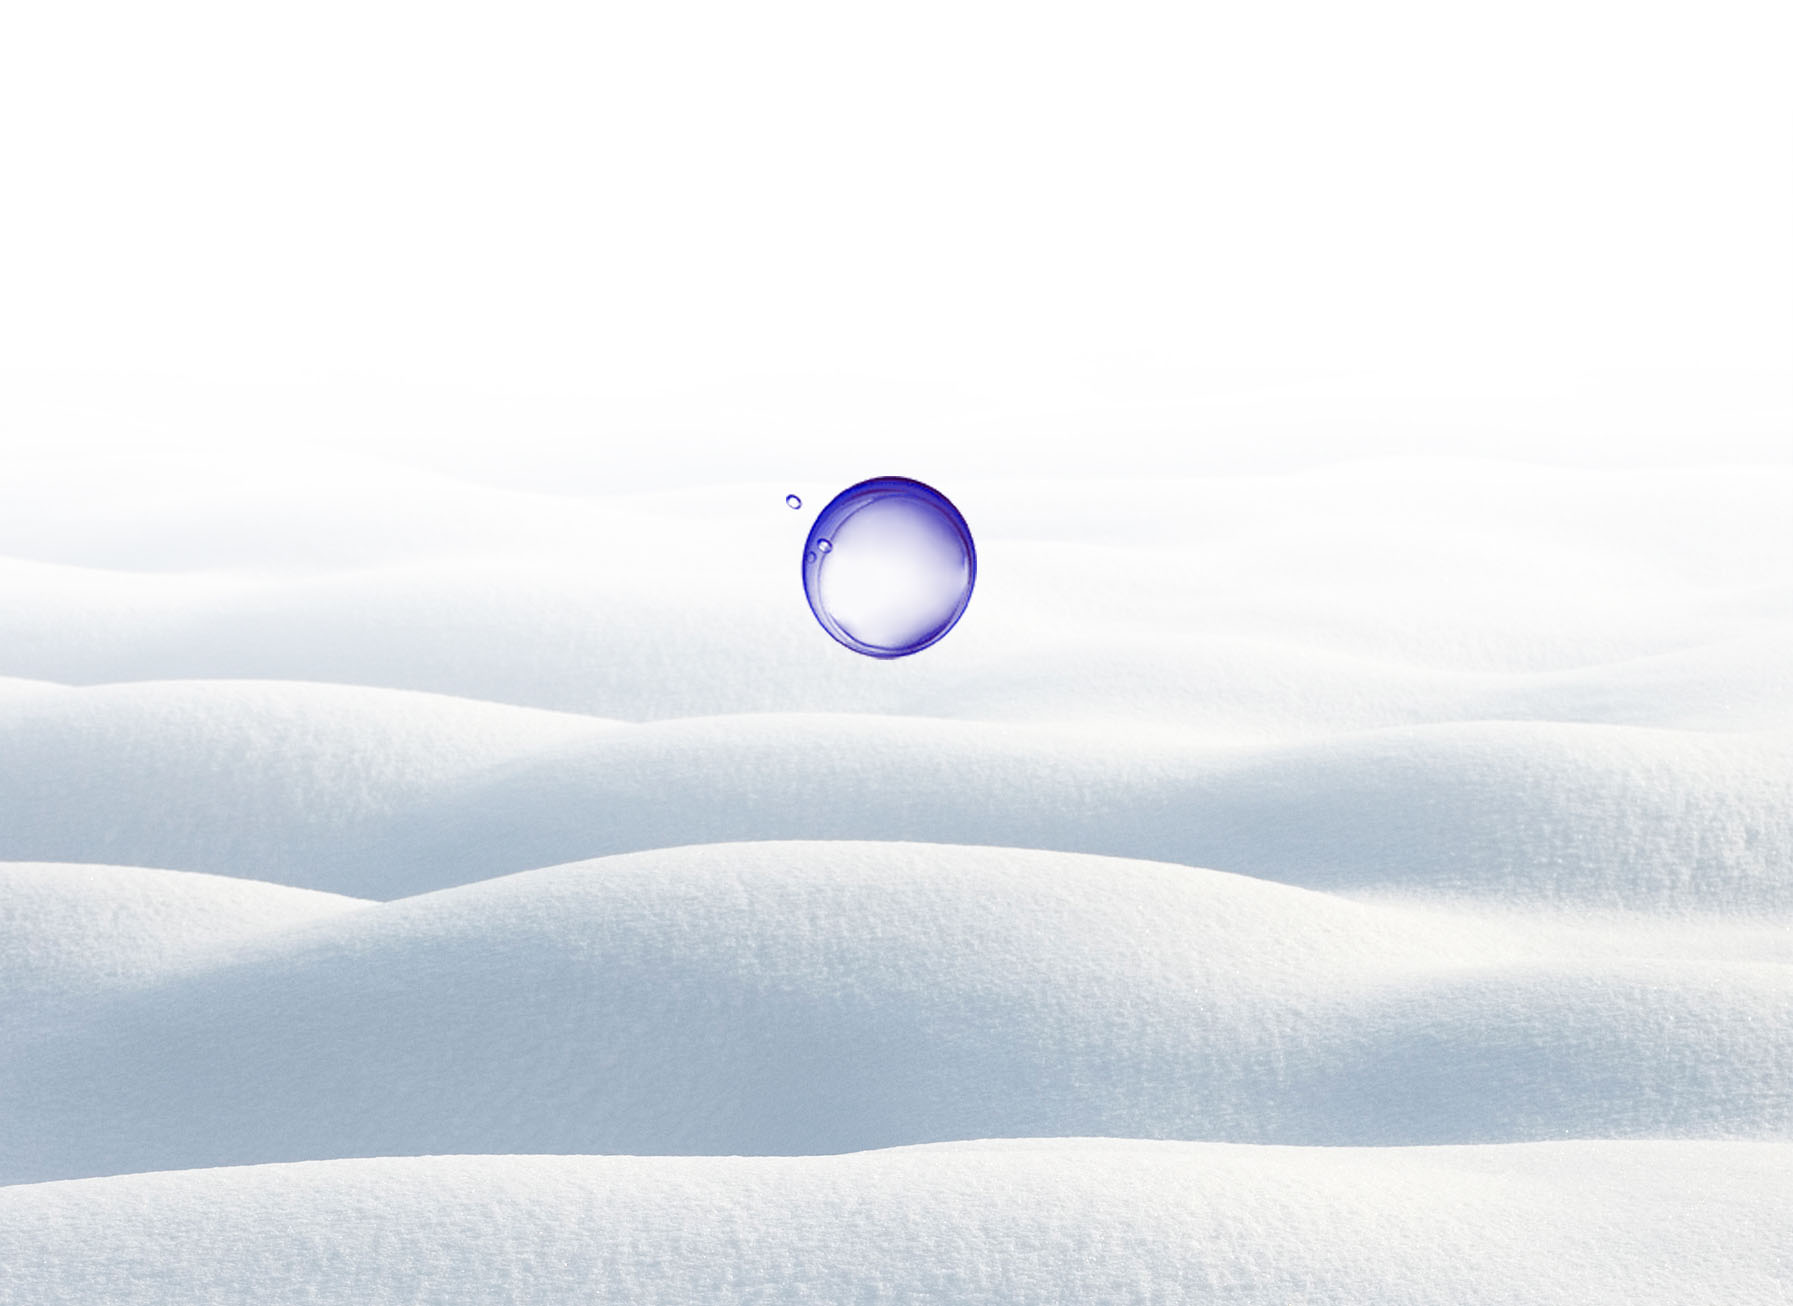 La imagen muestra una representación de la simetría resultante y muestra una gota de agua perfectamente simétrica emergiendo de una capa de nieve.